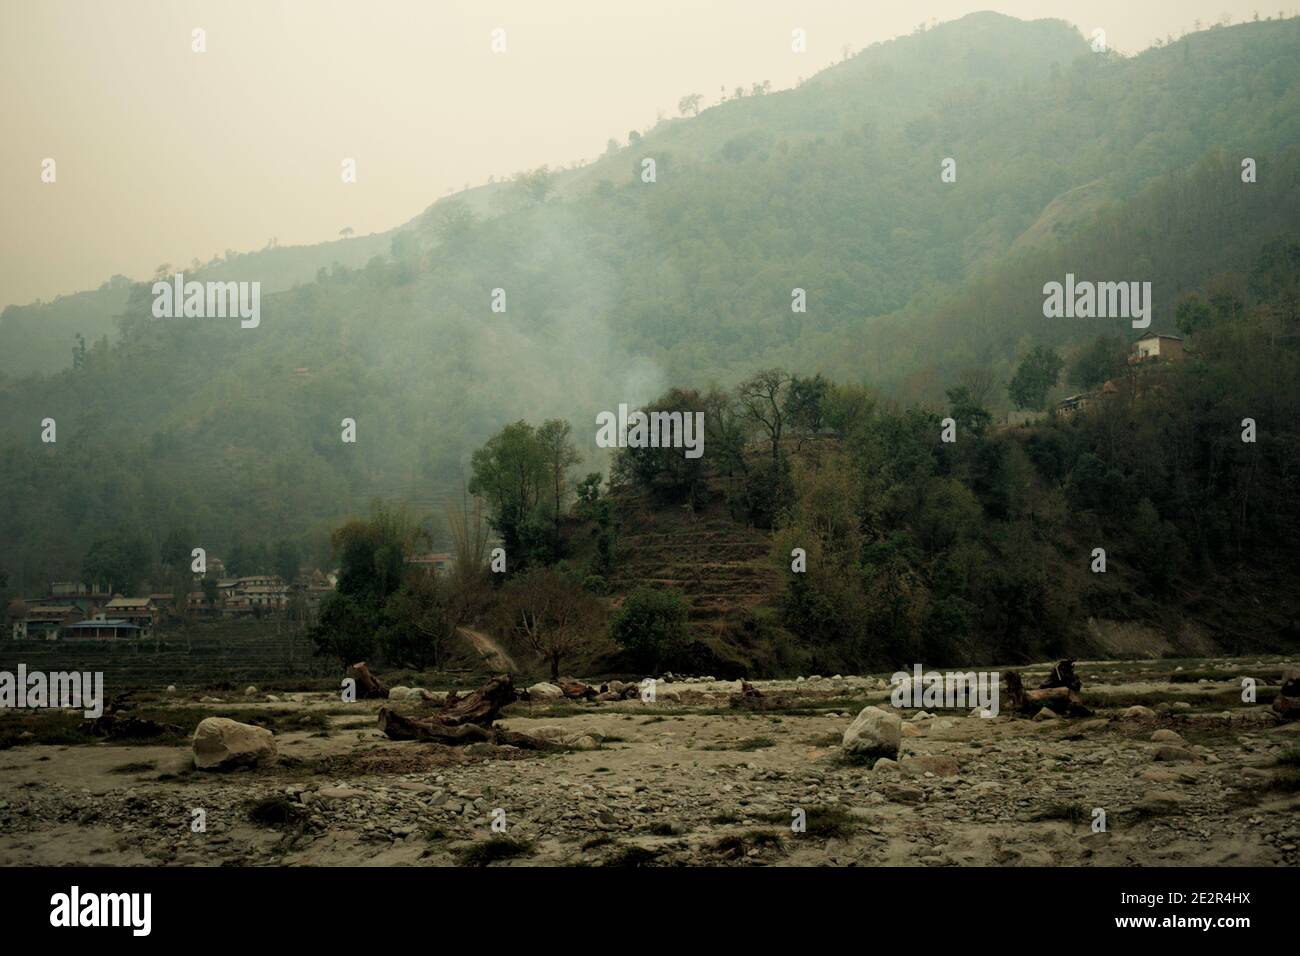 Sol plat sous un terrain escarpé qui servirait de voie navigable pendant la saison des pluies. Harpan Khola, Kaski, Gandaki, Népal. Banque D'Images